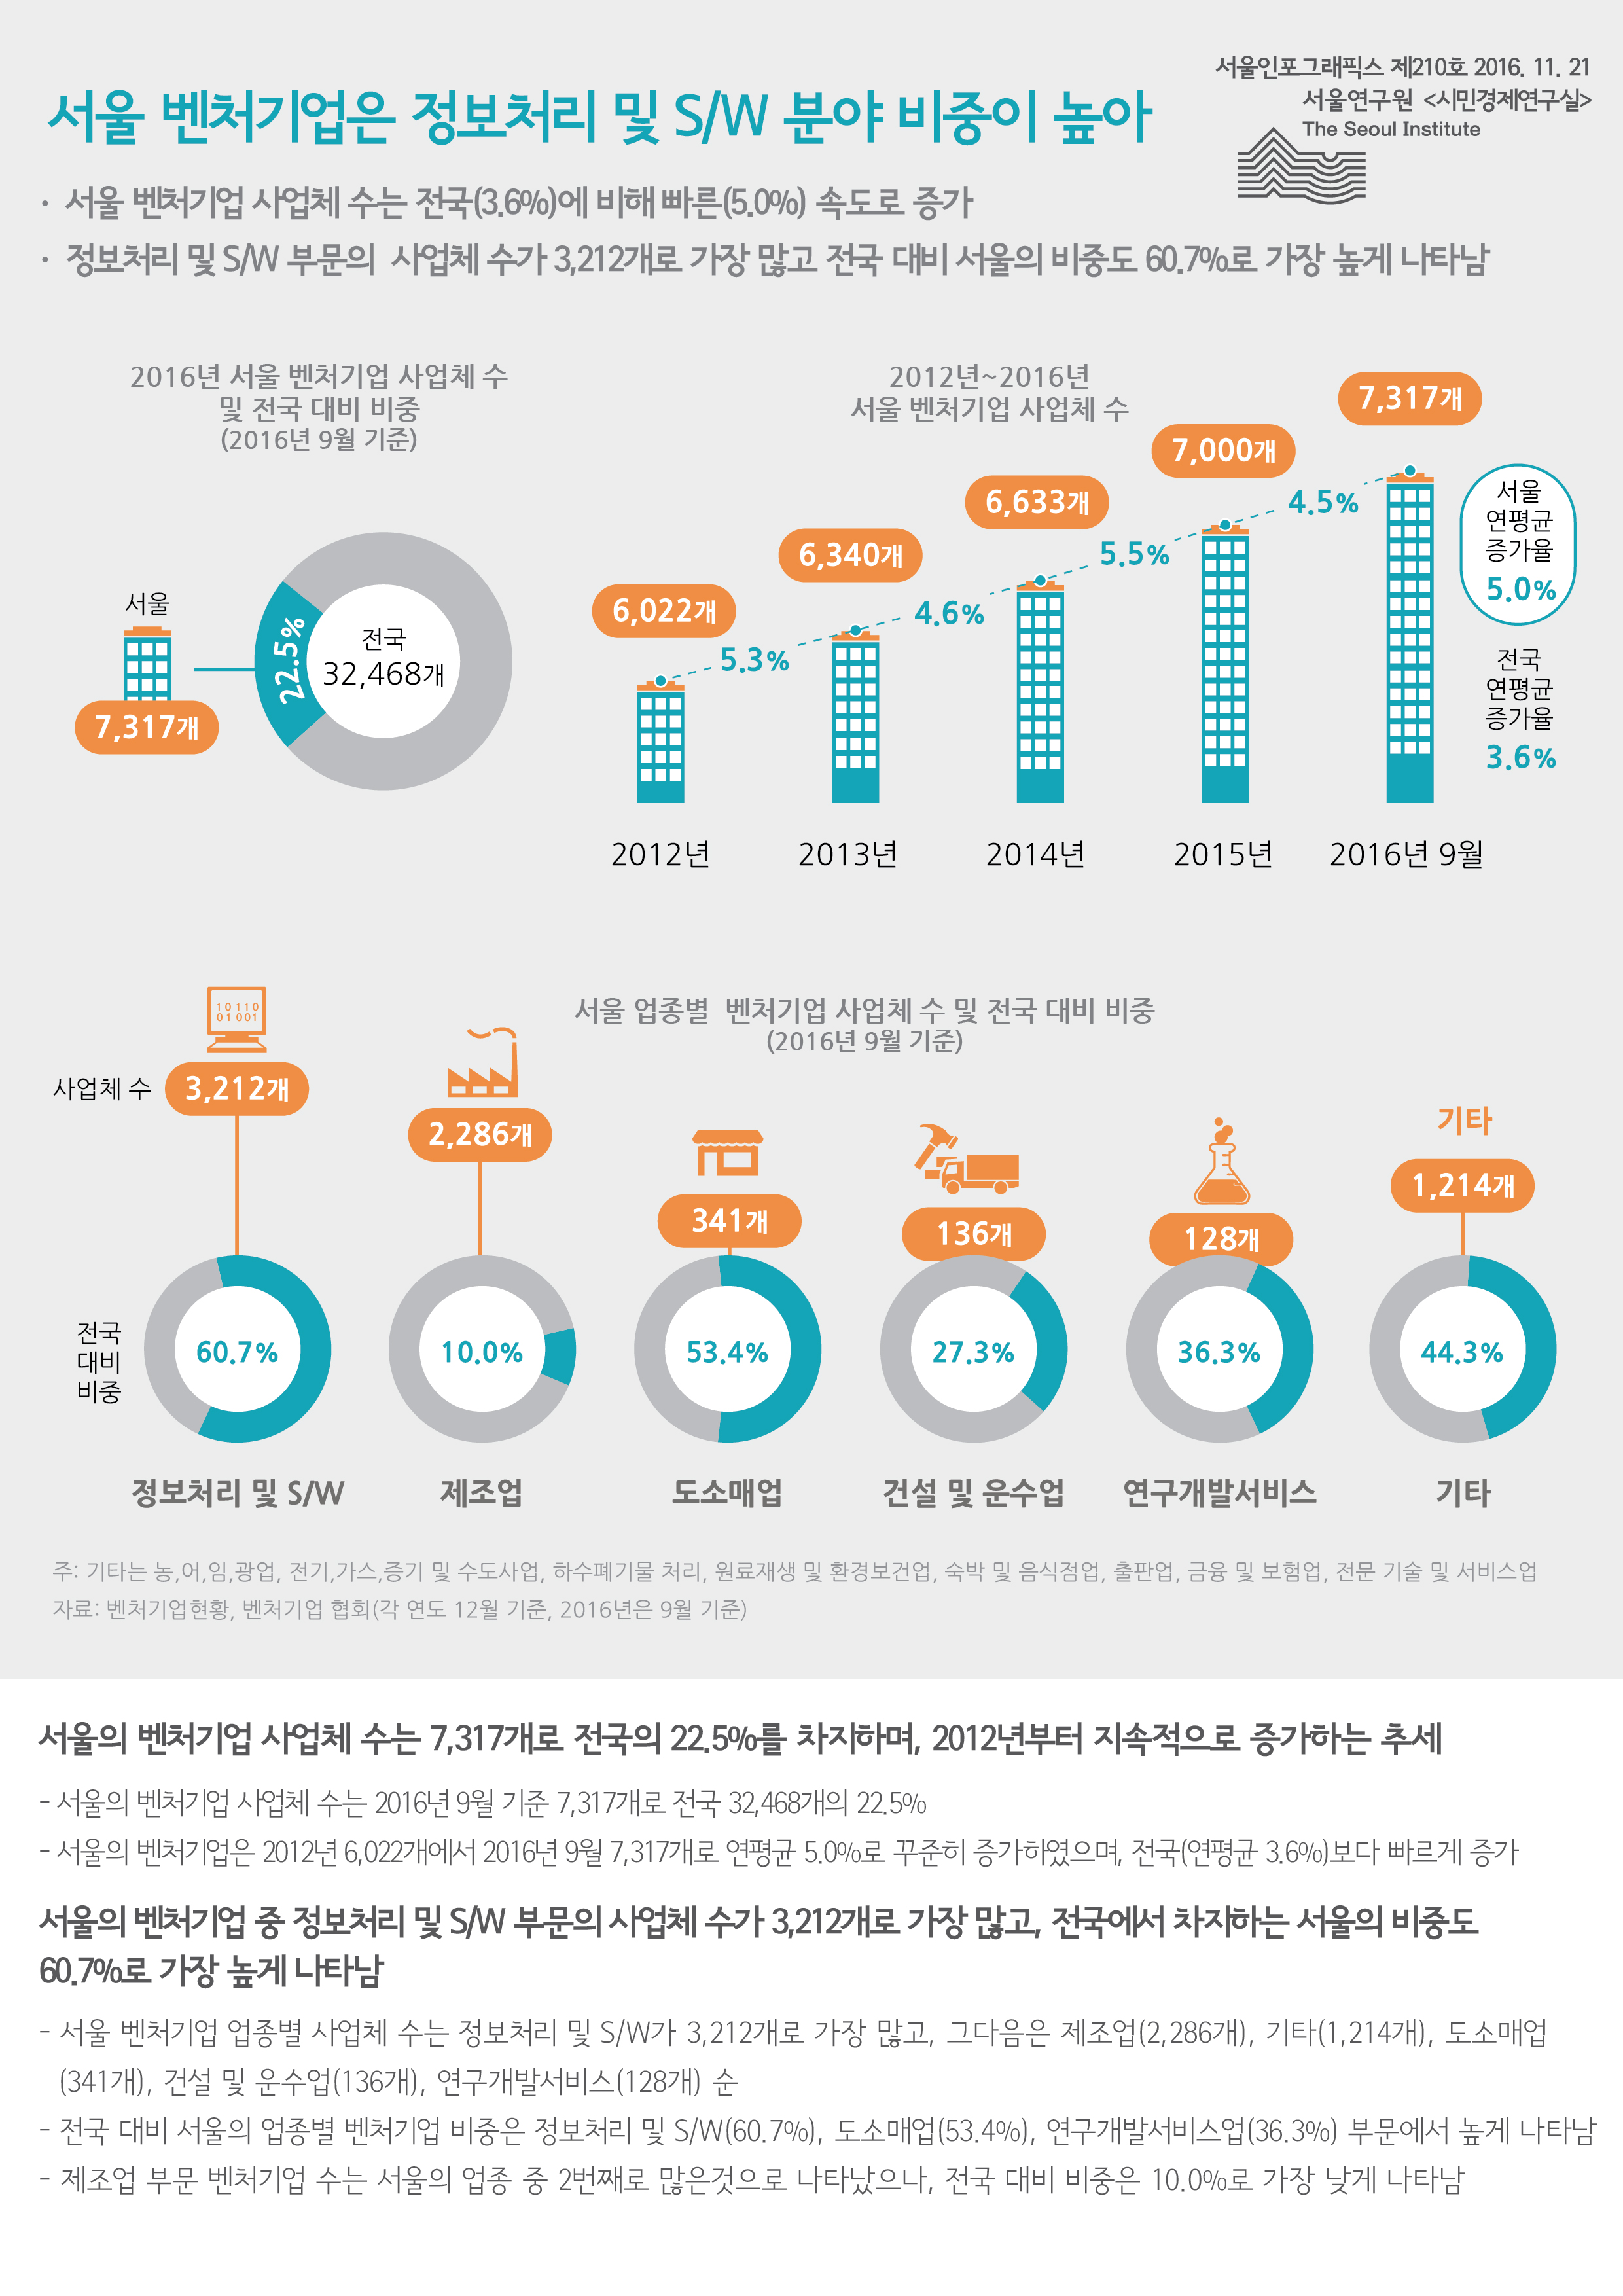 서울 벤처기업은 정보처리 및 S/W 분야 비중이 높아 서울인포그래픽스 제210호 2016년 11월 21일 서울 벤처기업 사업체 수는 전국(3.6%)에 비해 빠른(5.0%) 속도로 증가. 정보처리 및 S/W 부문의 사업체 수가 3,212개로 가장 많고, 전국 대비 서울의 비중도 60.7%로 가장 높게 나타남으로 정리 될 수 있습니다. 인포그래픽으로 제공되는 그래픽은 하단에 표로 자세히 제공됩니다.